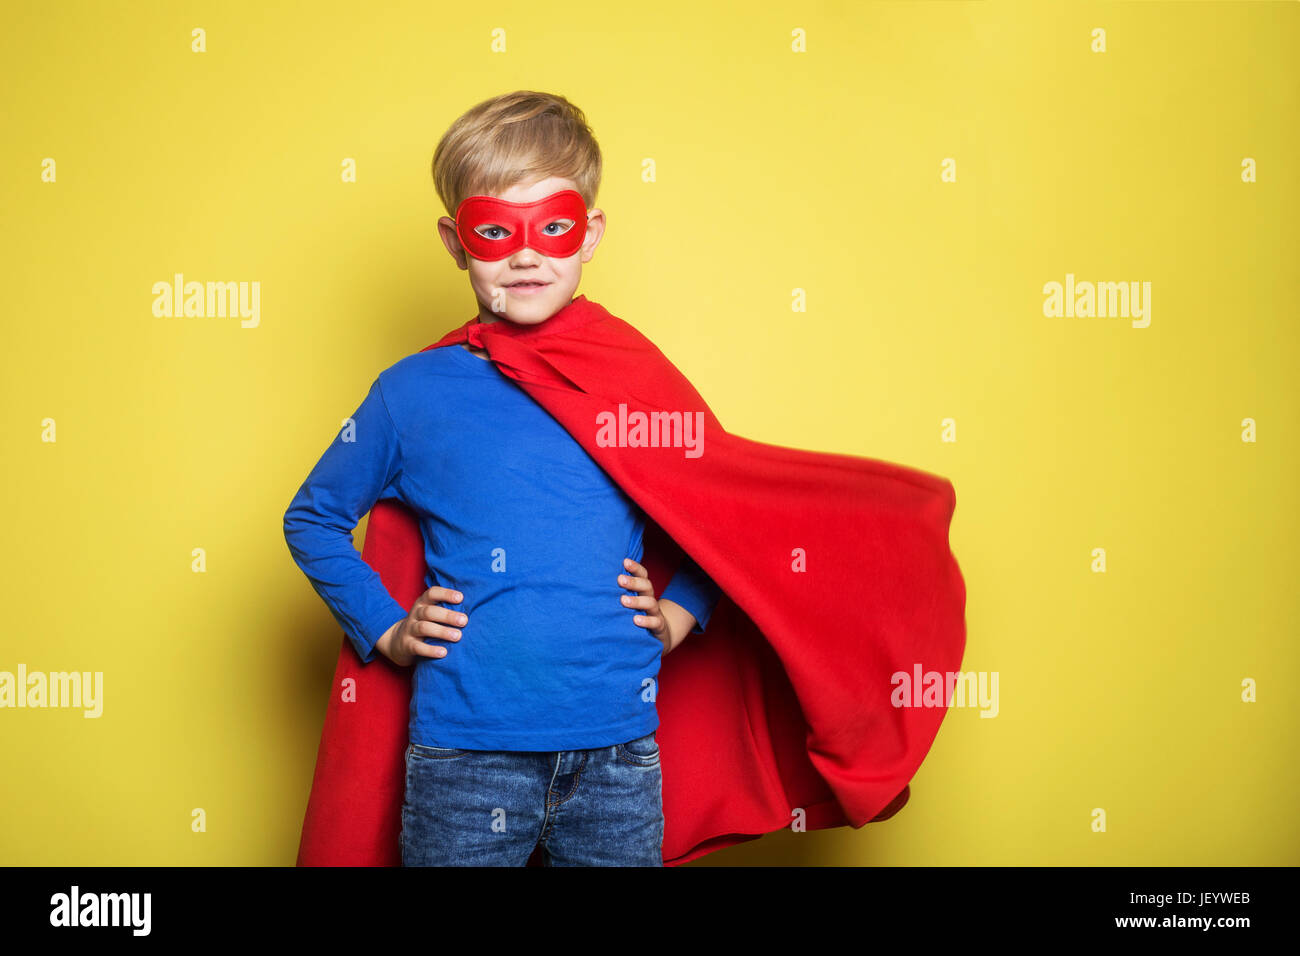 Junge im roten Superhelden Cape und Maske. Superman. Studio-Porträt auf  gelbem Hintergrund Stockfotografie - Alamy